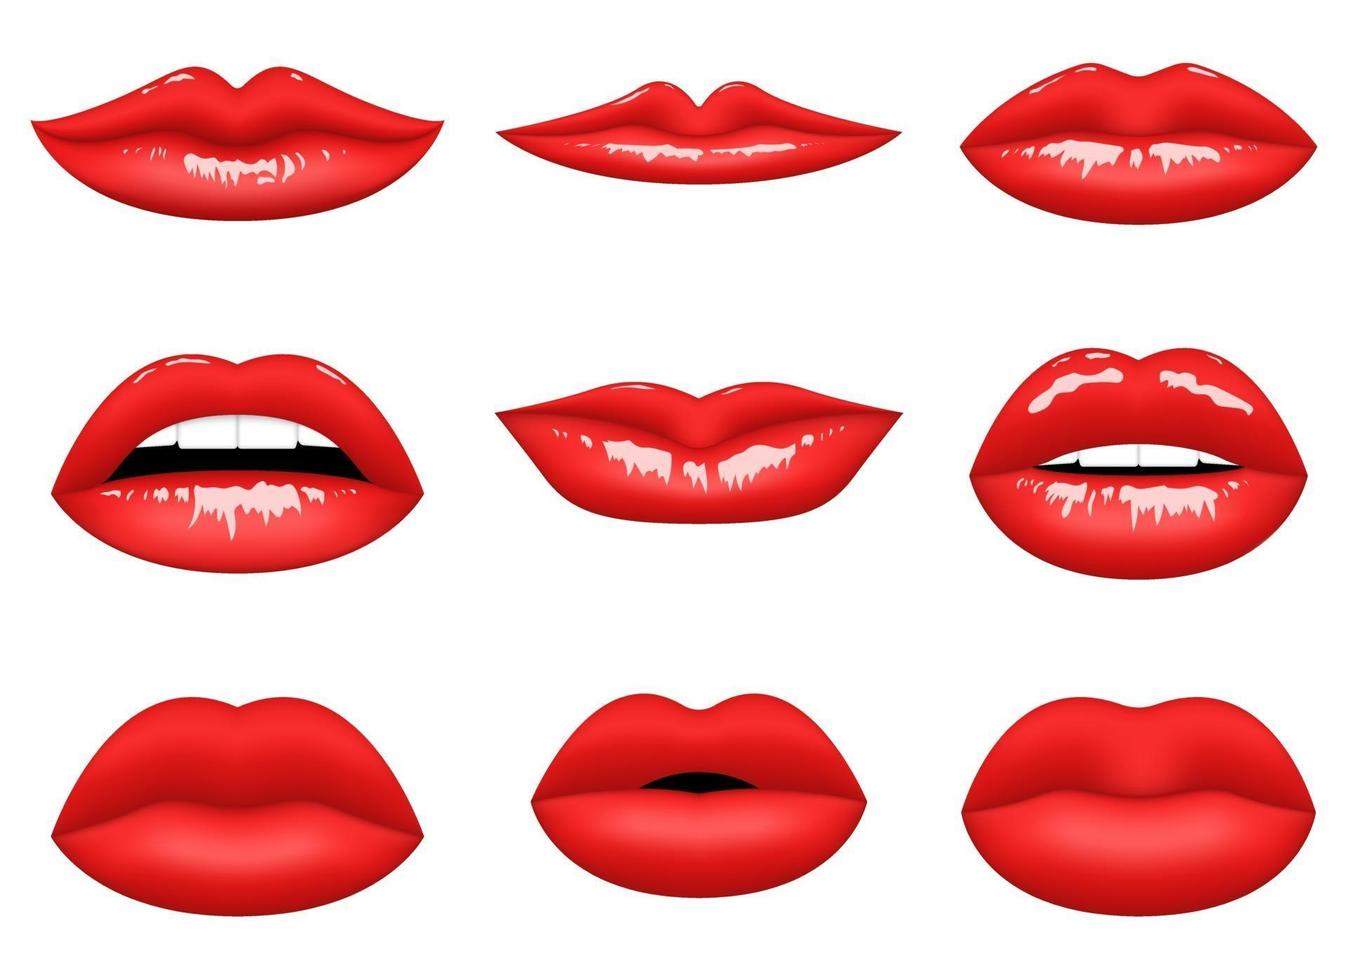 rode vrouw lippen vector ontwerp illustratie geïsoleerd op een witte achtergrond